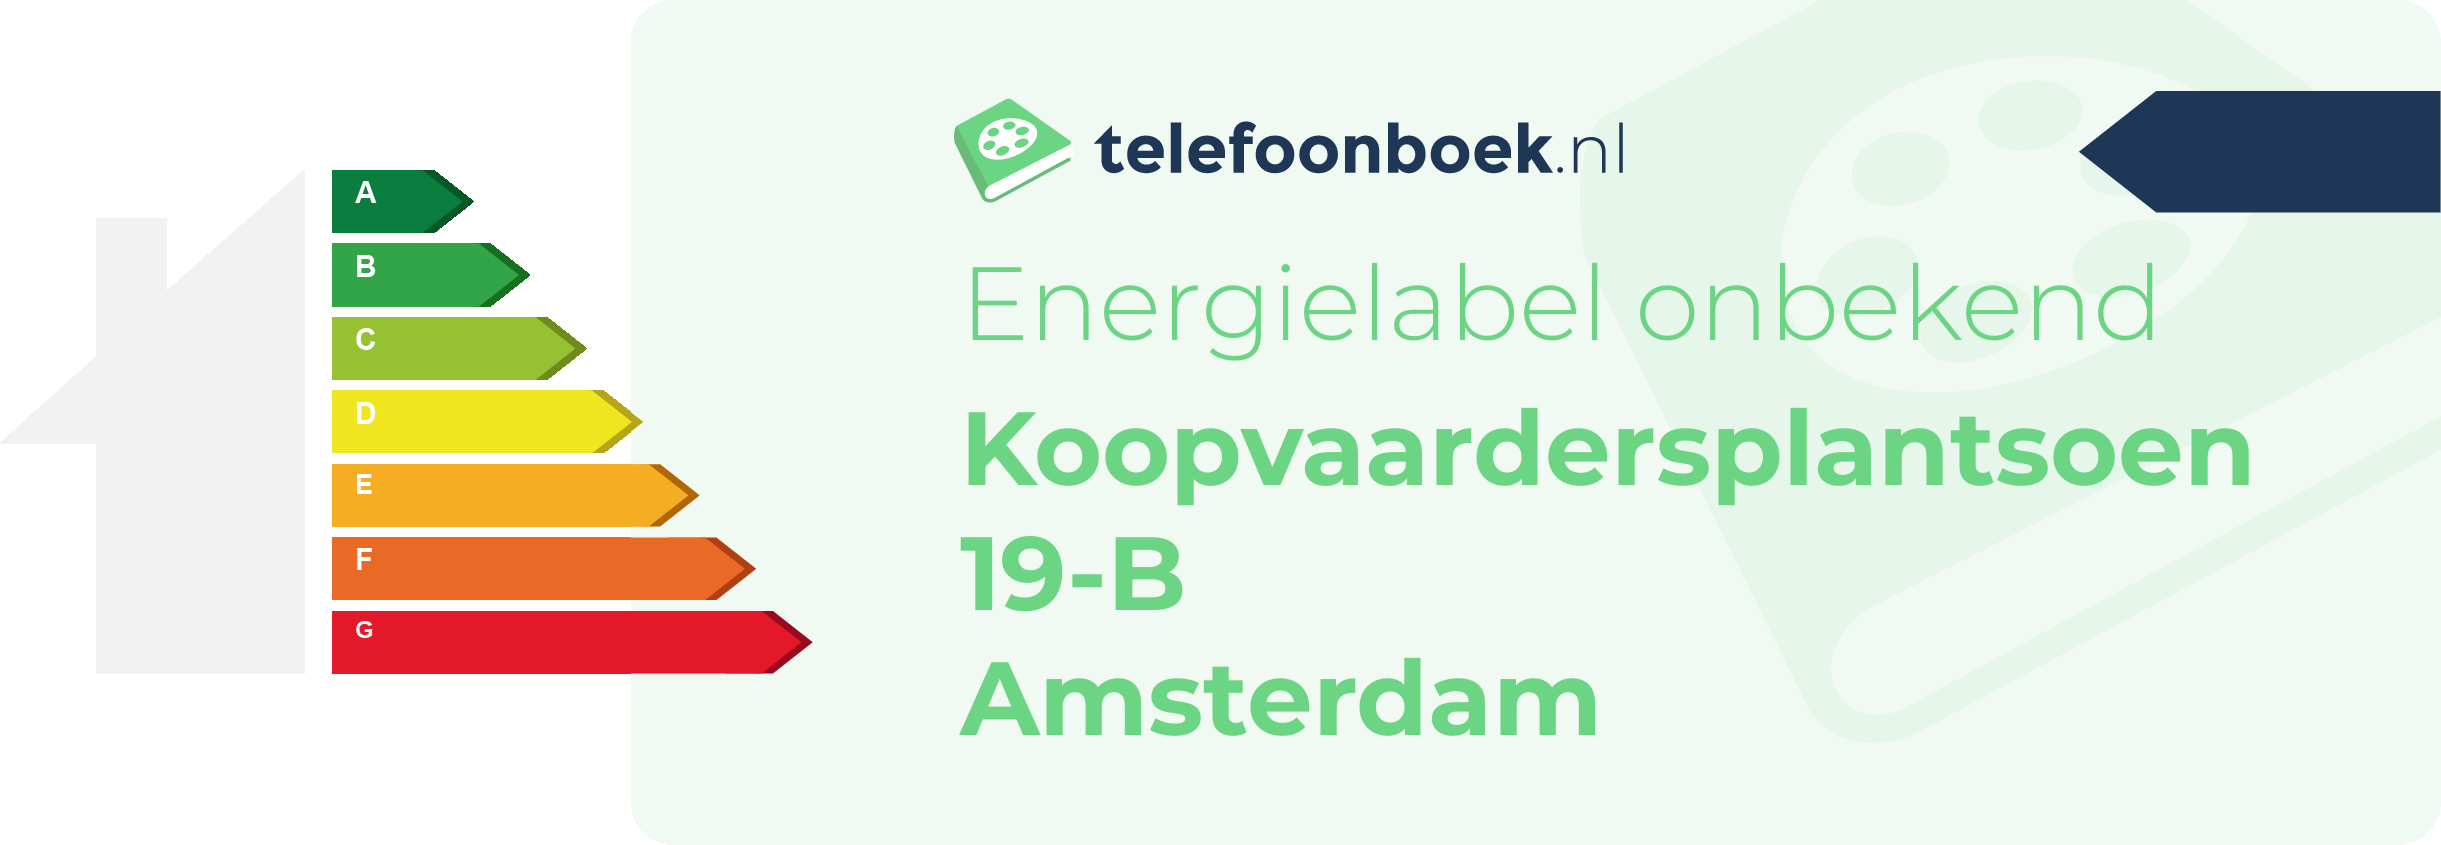 Energielabel Koopvaardersplantsoen 19-B Amsterdam